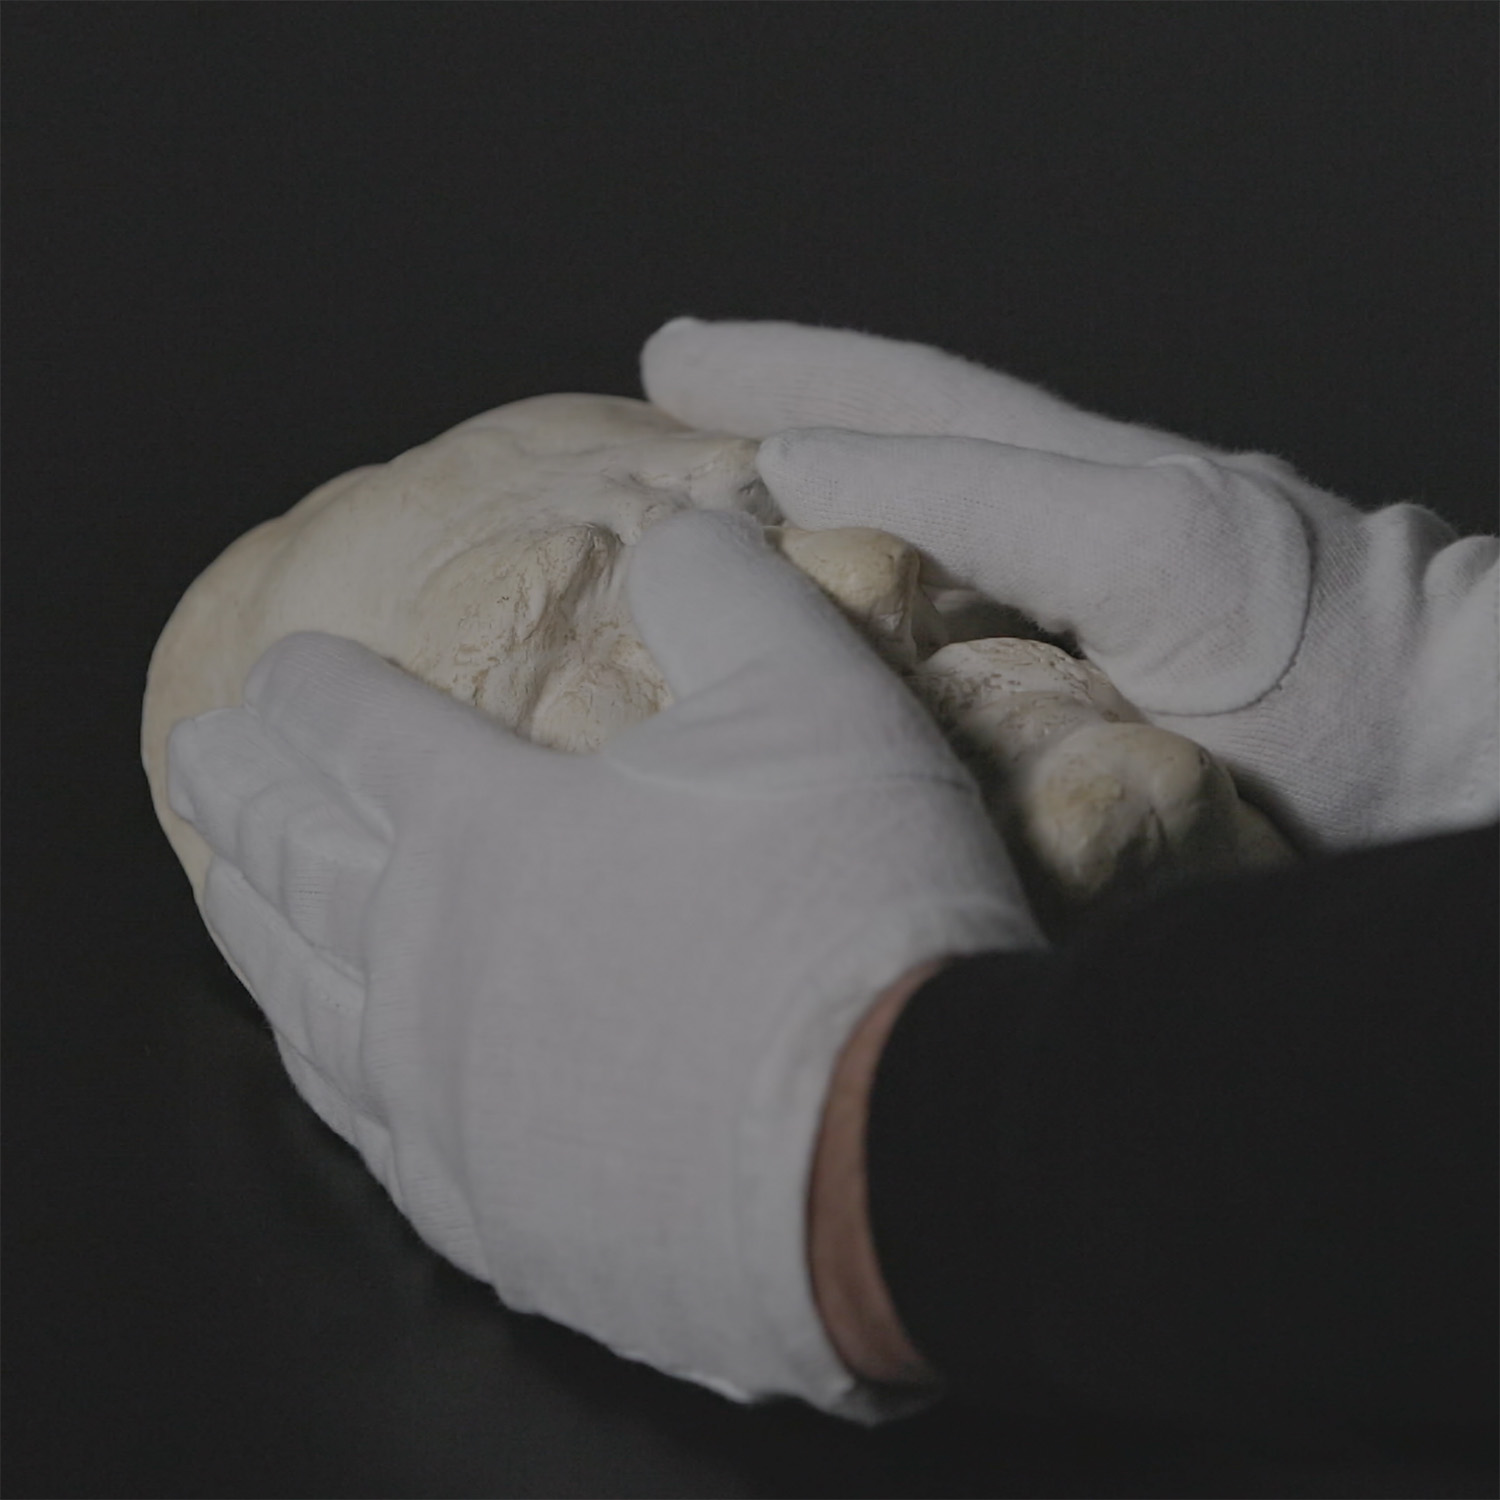 Totenmaske wird von zwei Händne mit weißen Handschuhen umfasst